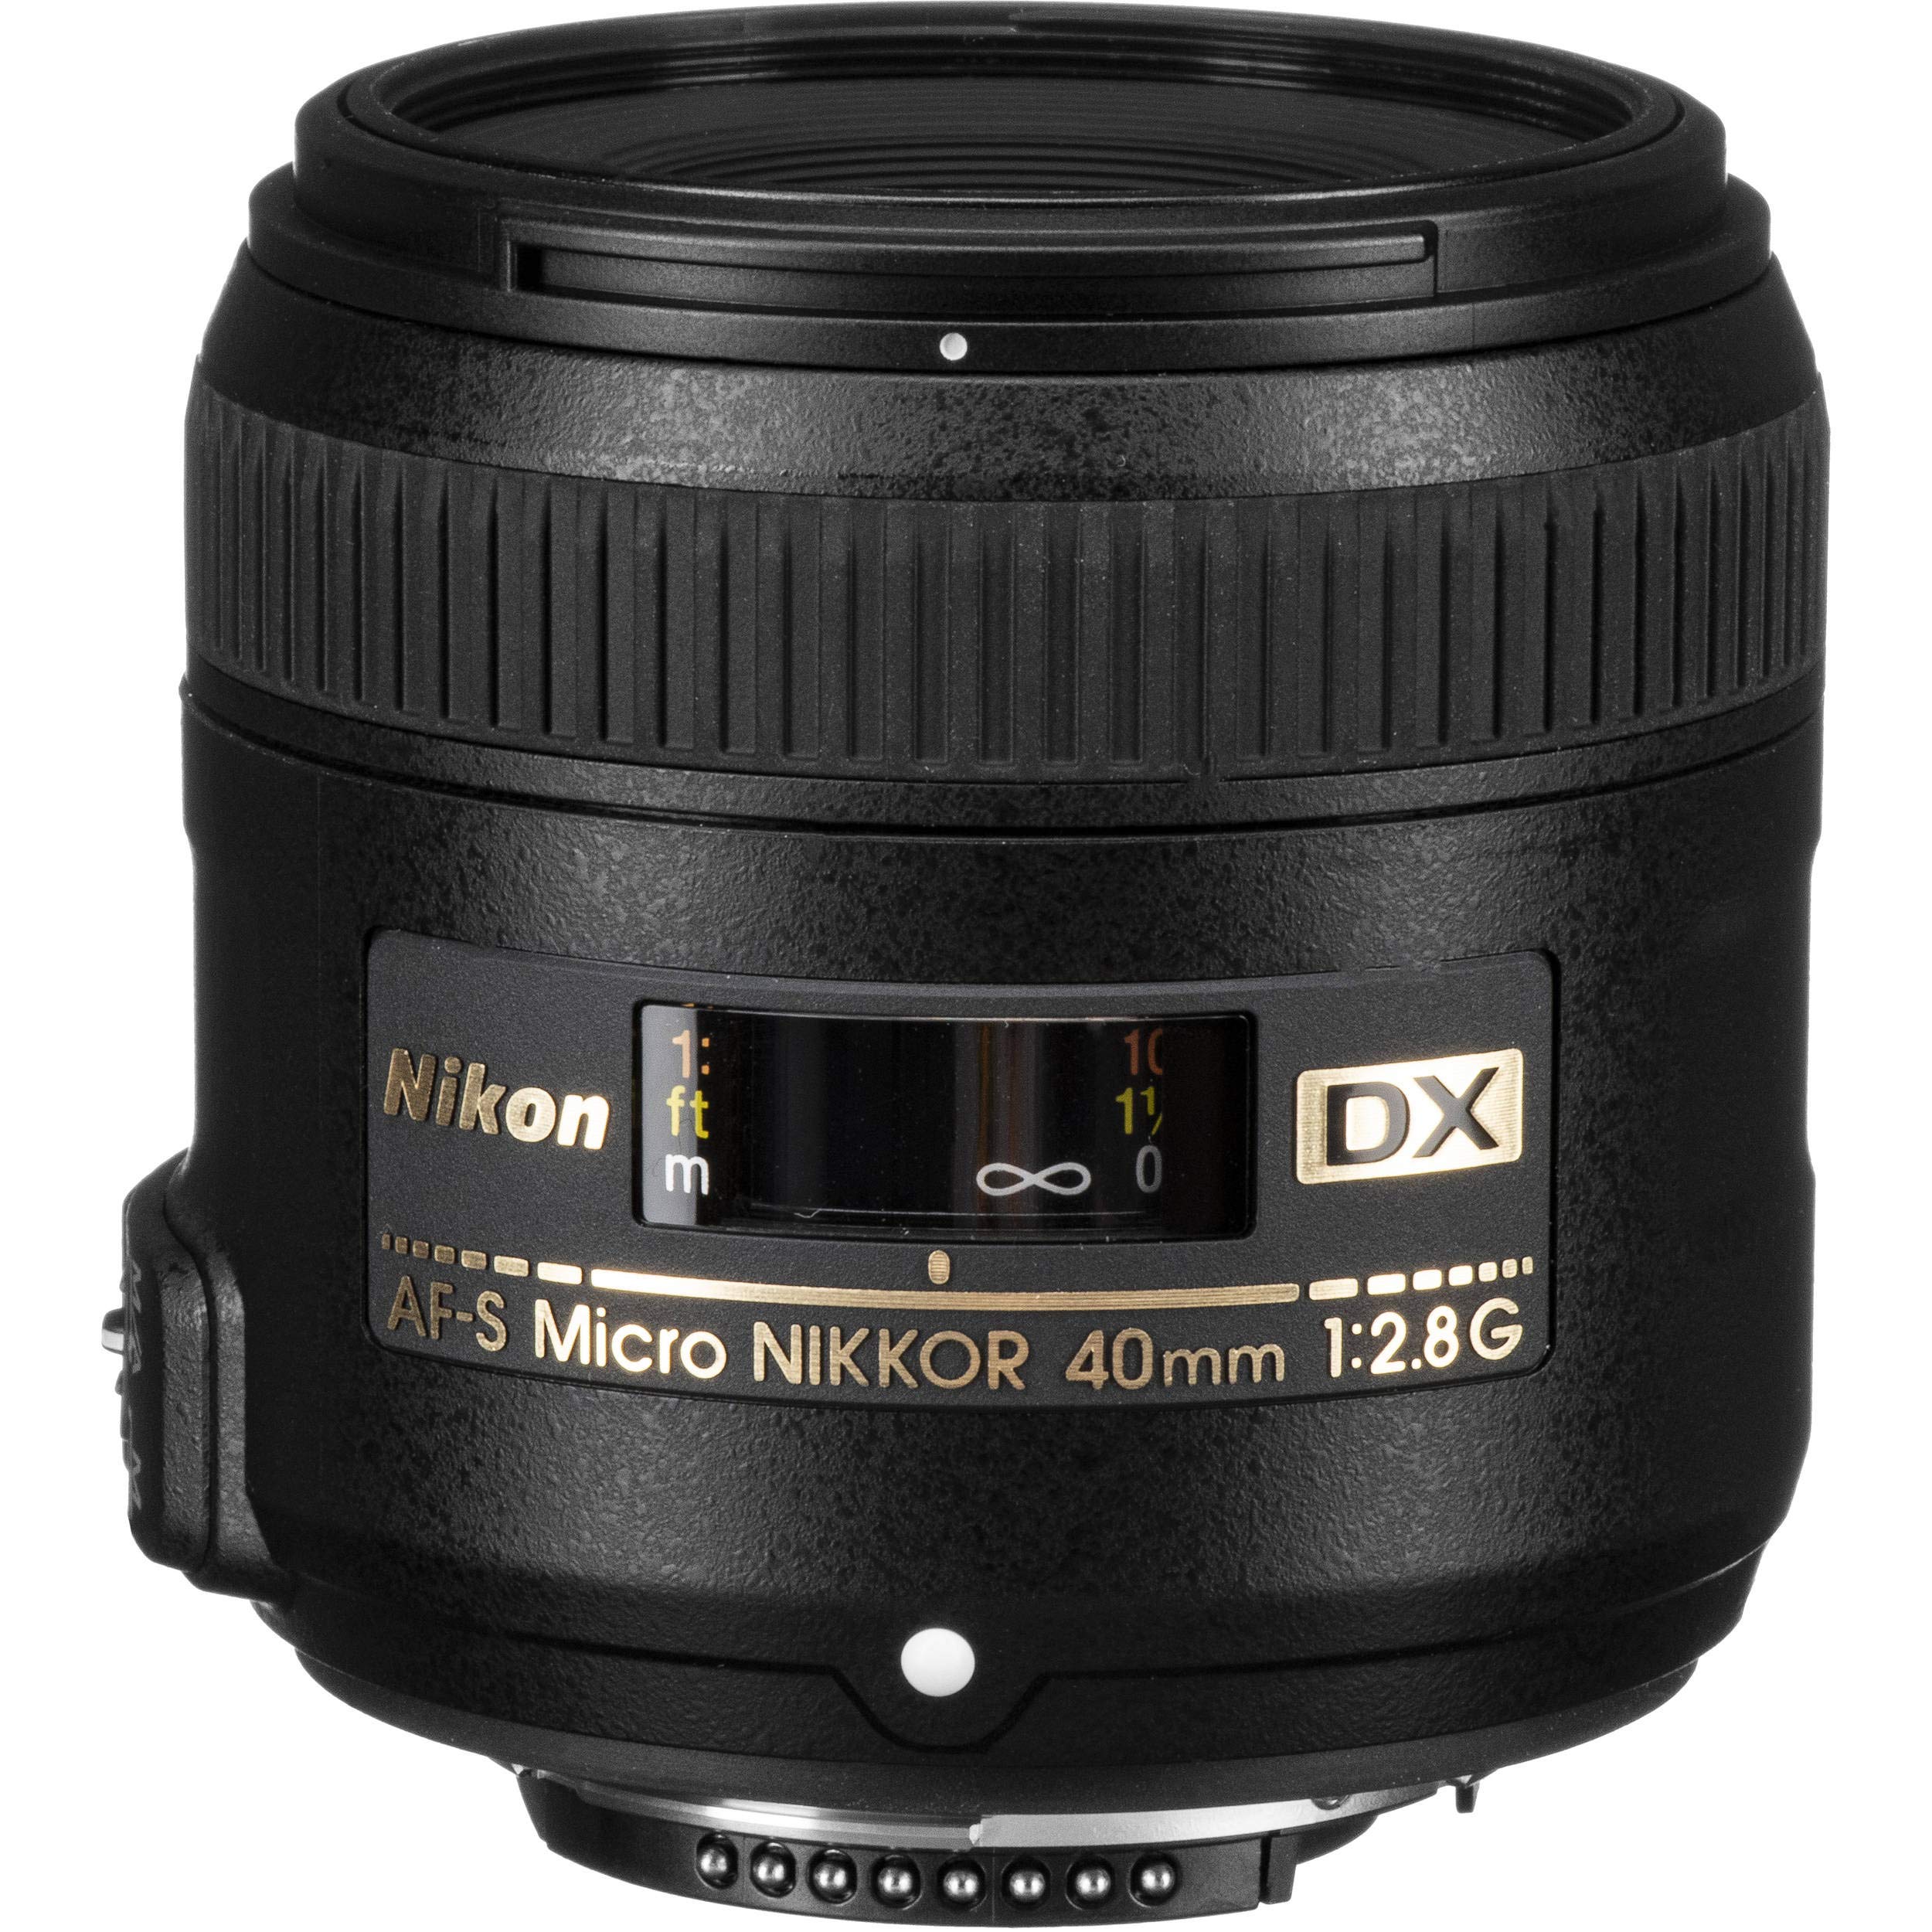 Nikon AF-S DX Micro NIKKOR 40mm F.2.8G Lens (International Model) + 4.5 inch Vivitar Premium Lens Case + Cleaning Kit